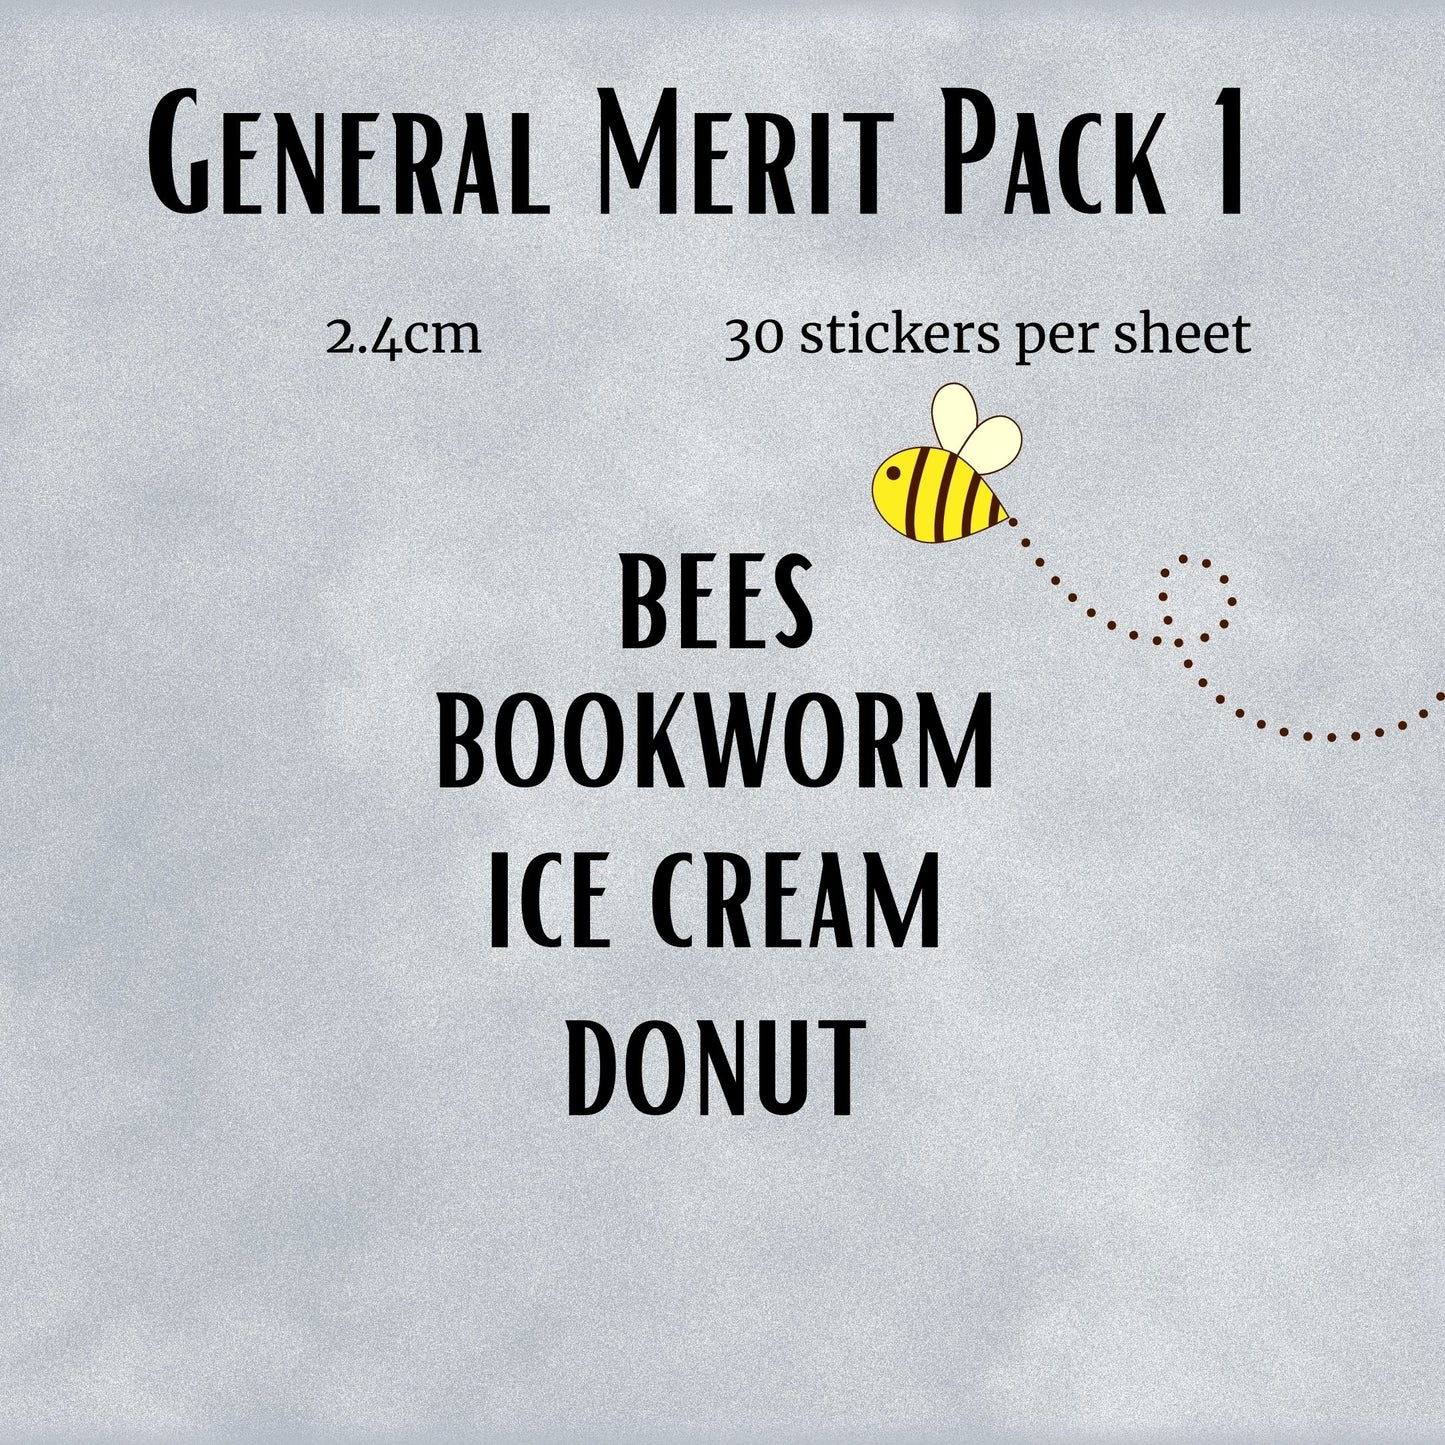 General Merit Pack 1